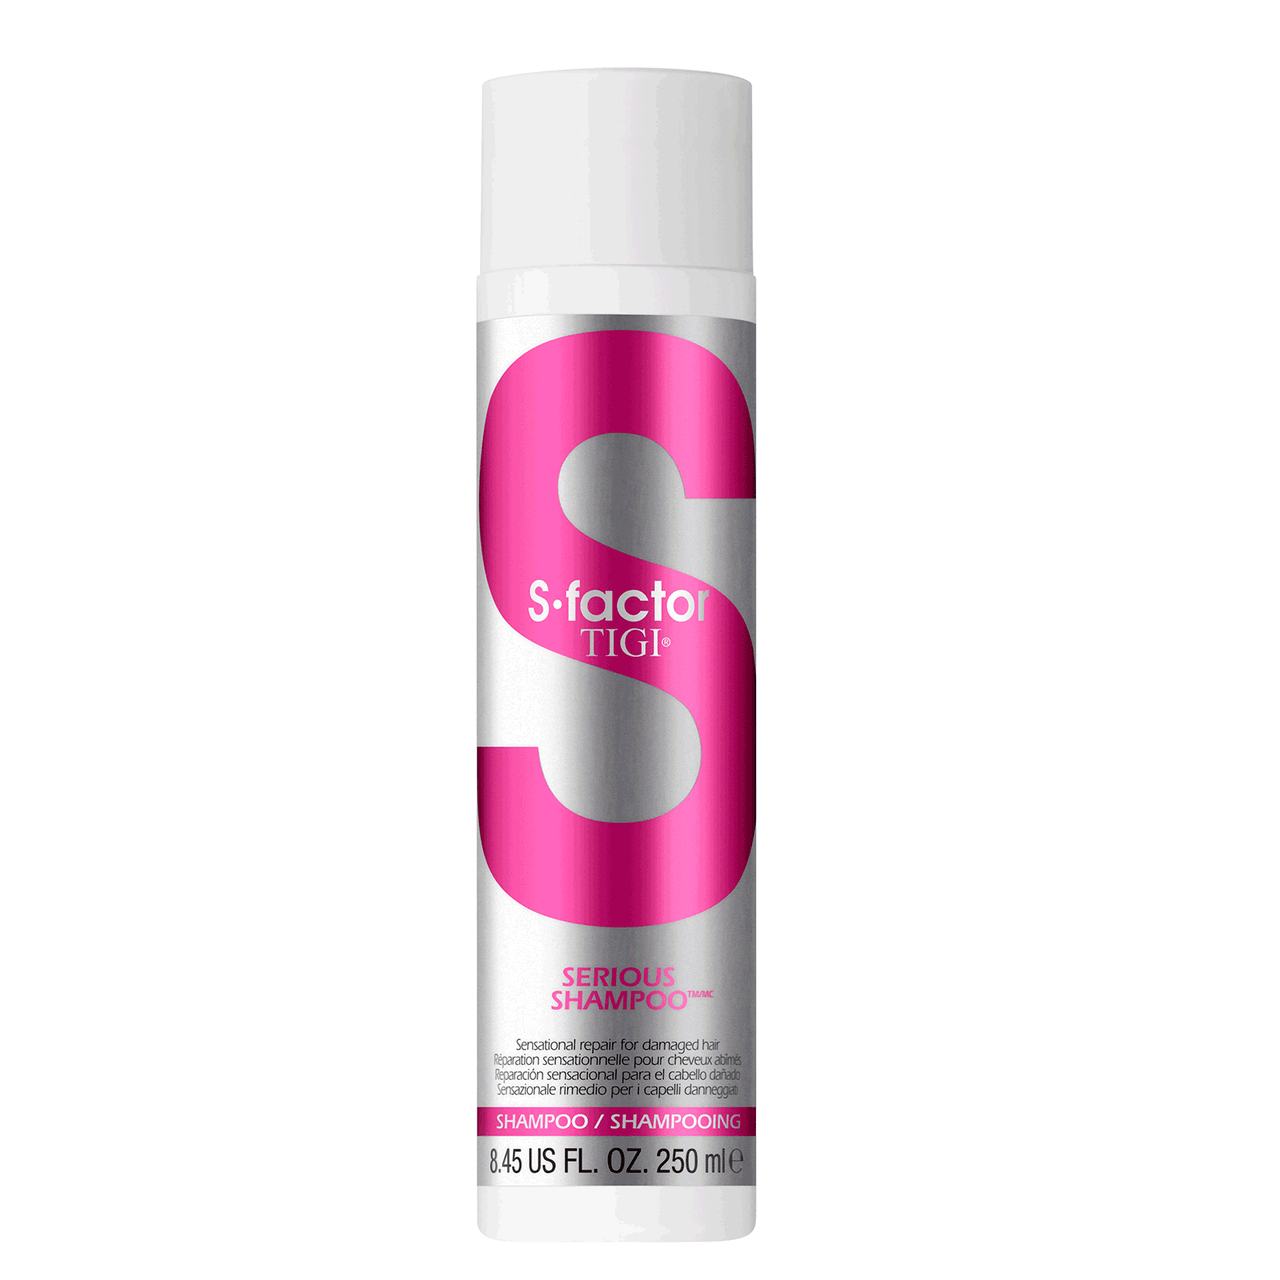 TIGI S-Factor Serious Shampoo 8.45 fl oz